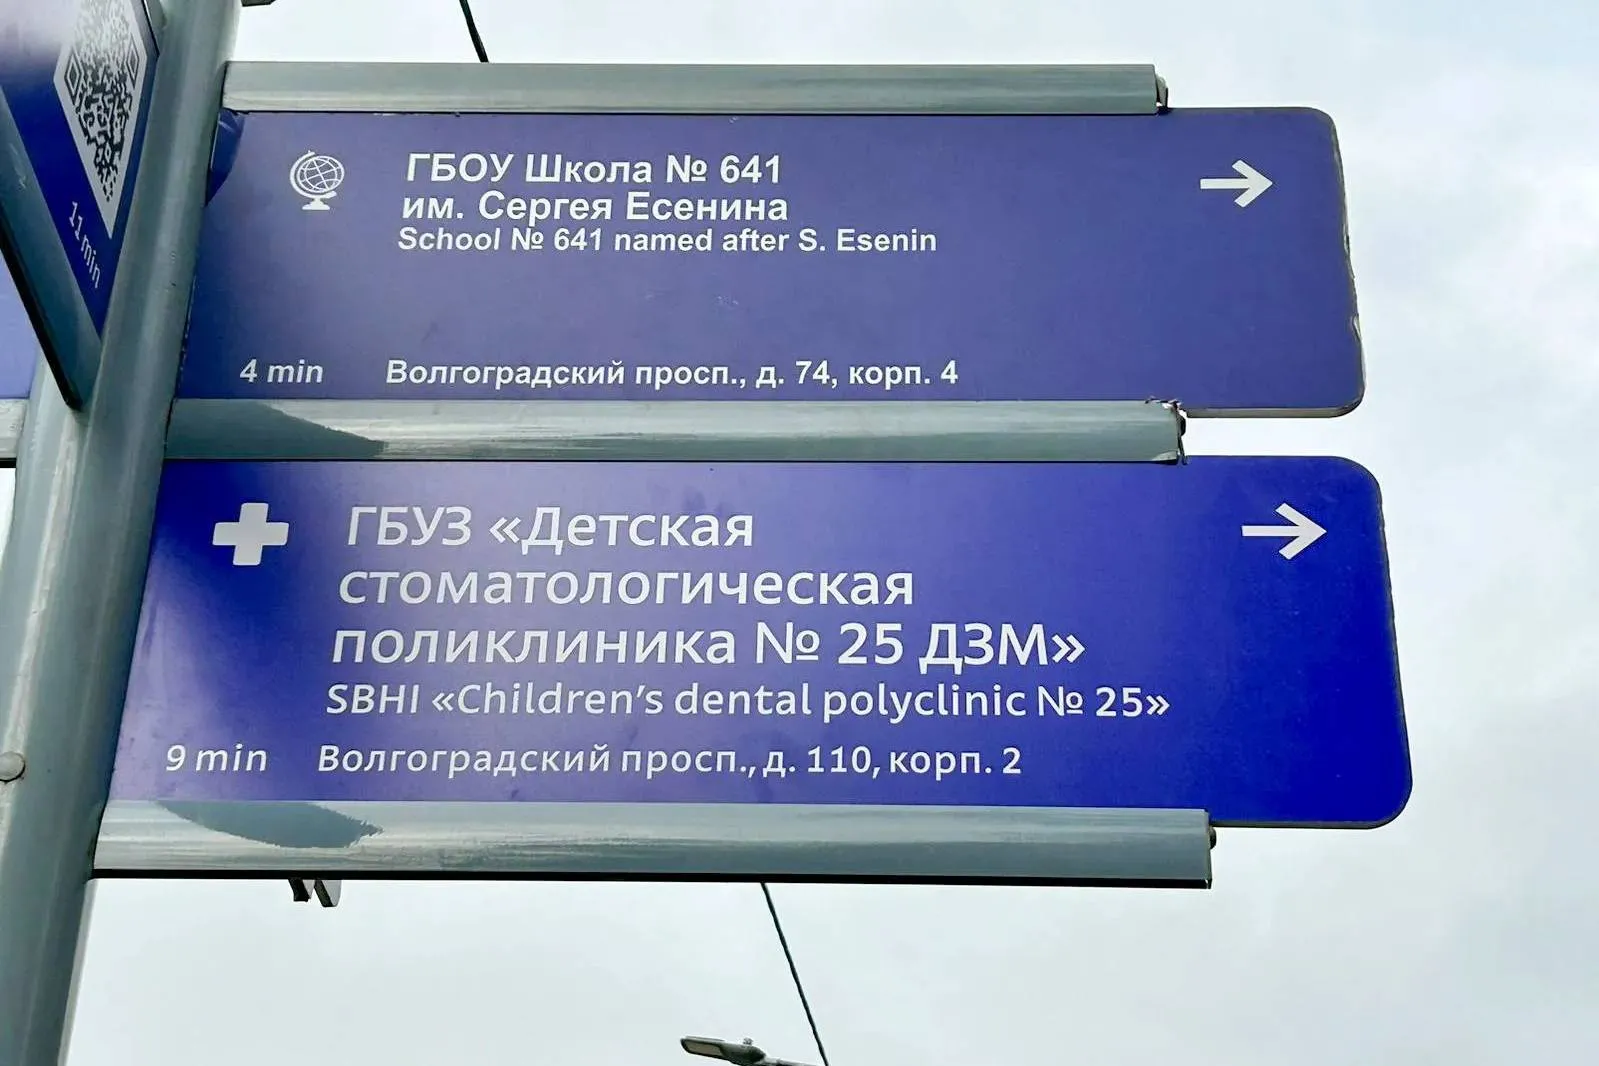 В Москве установят указатели, показывающие путь к 60 объектам здравоохранения